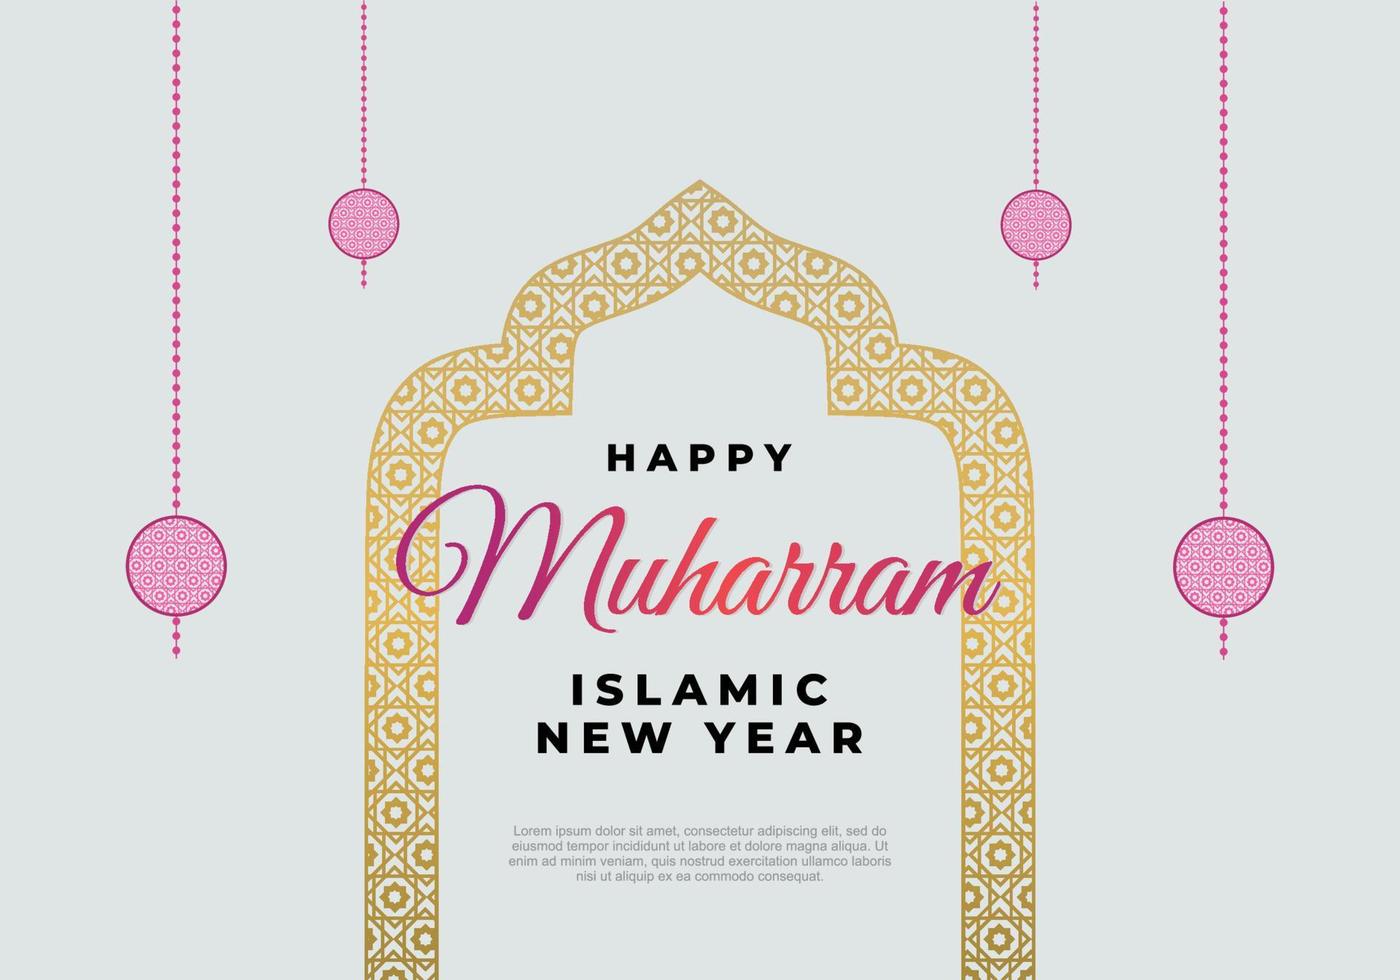 muharram du nouvel an islamique avec des ornements dorés et une lanterne rose vecteur